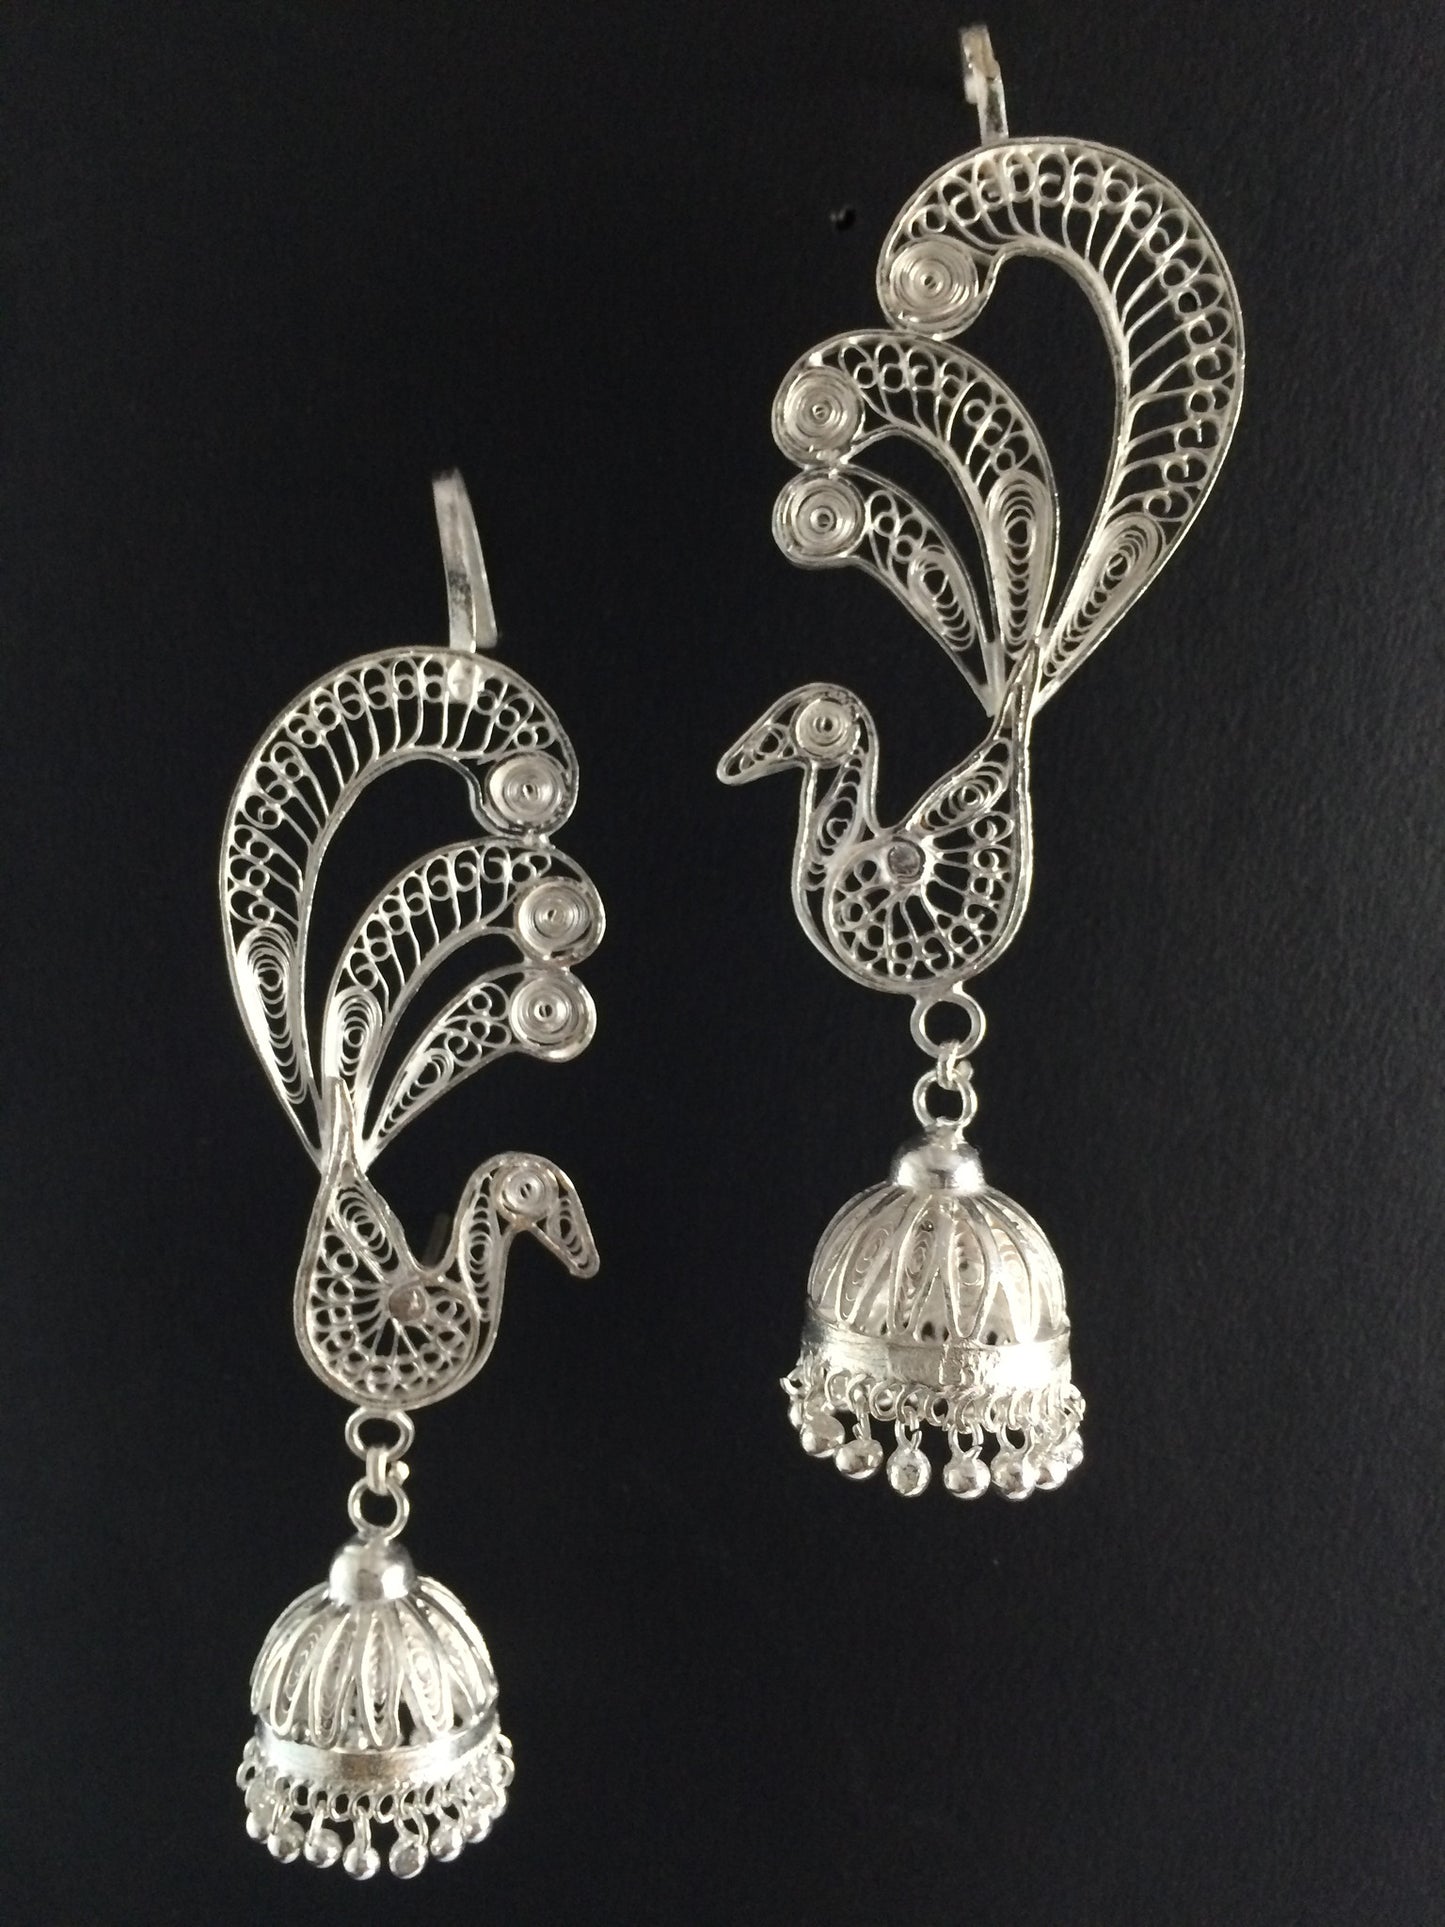 Odissi dance jewellery